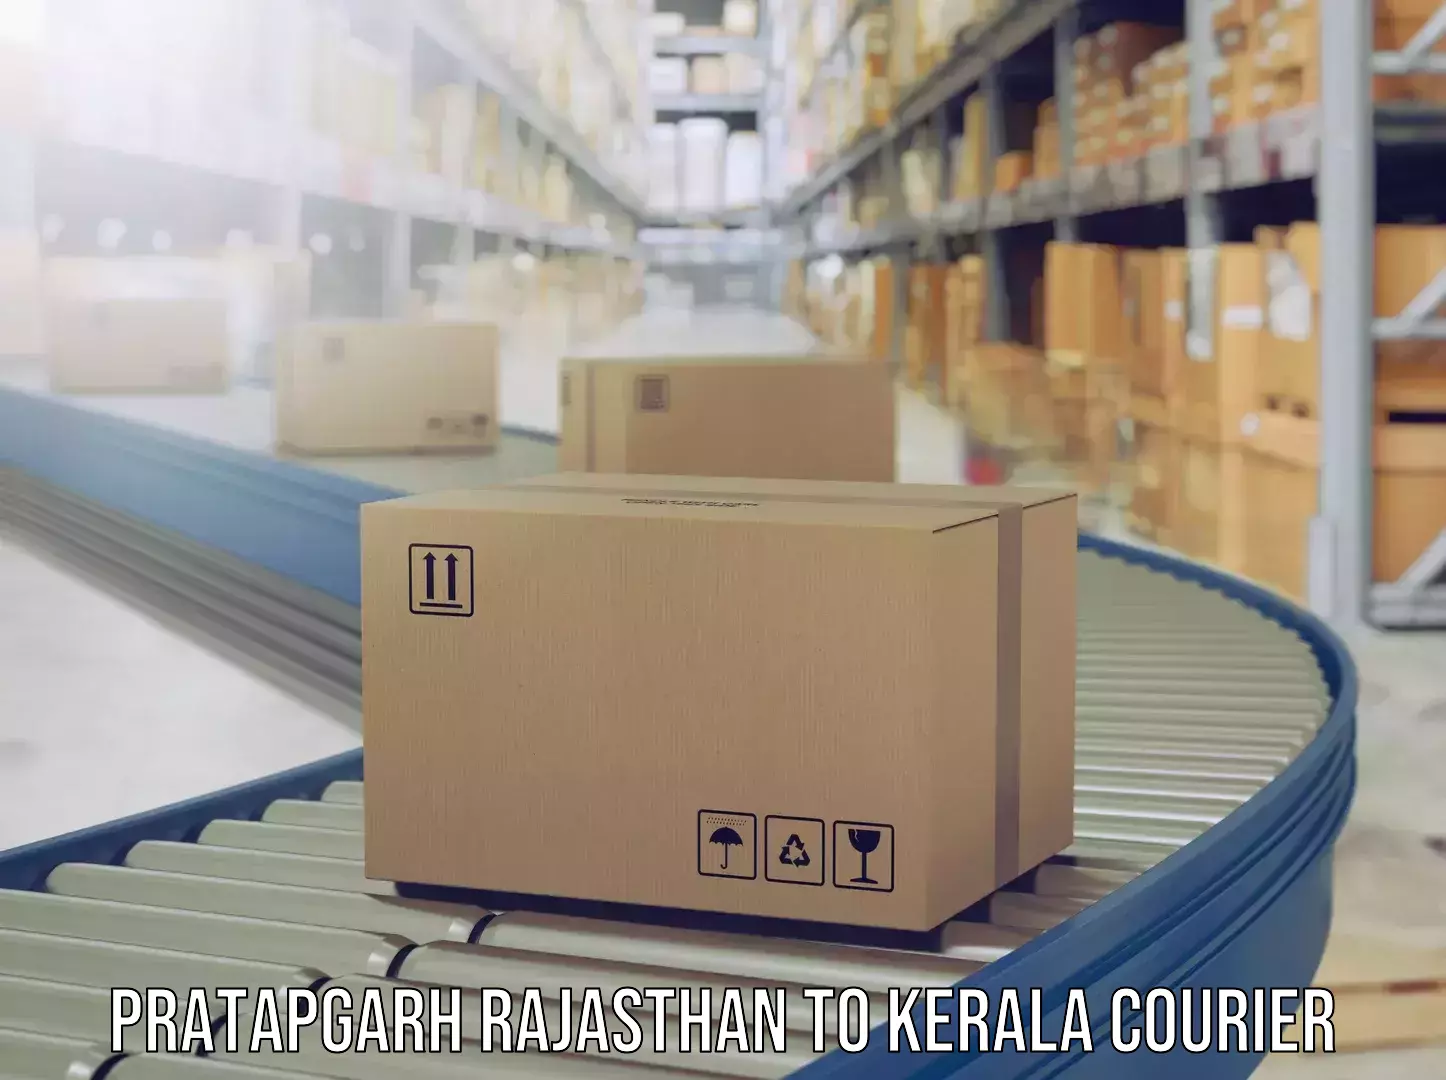 Luggage shipping rates calculator Pratapgarh Rajasthan to Kerala